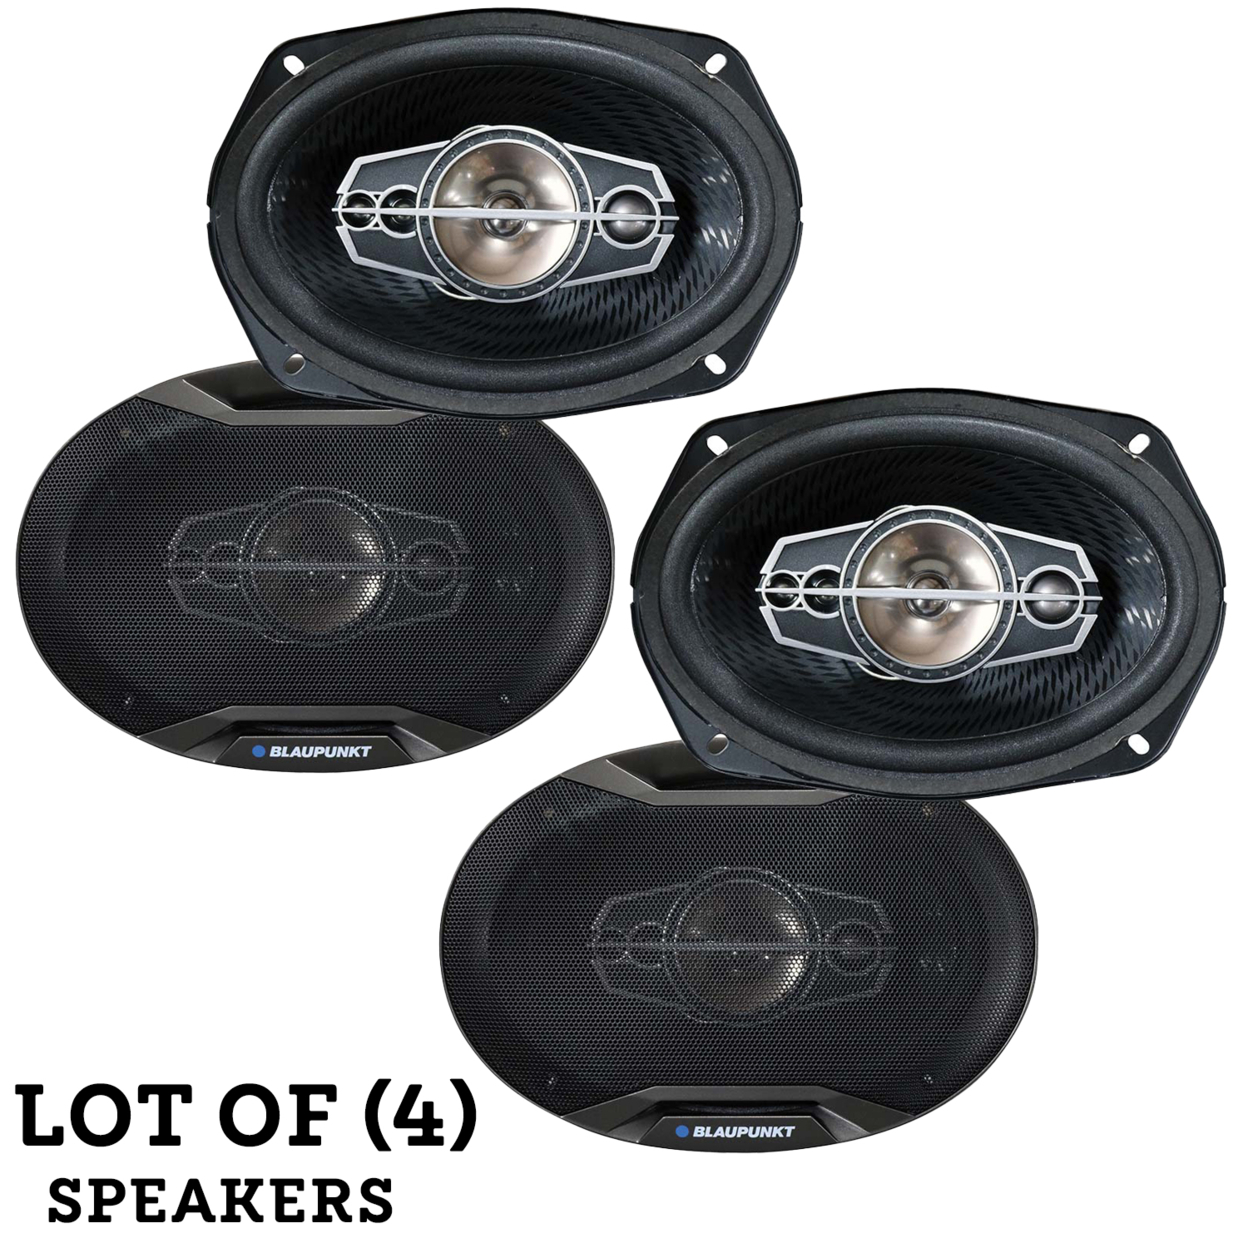 (Set Of 2) BLAUPUNKT GTX695 6 X 9 5-Way Coaxial Car Speakers 750 Watts 4 Ohm